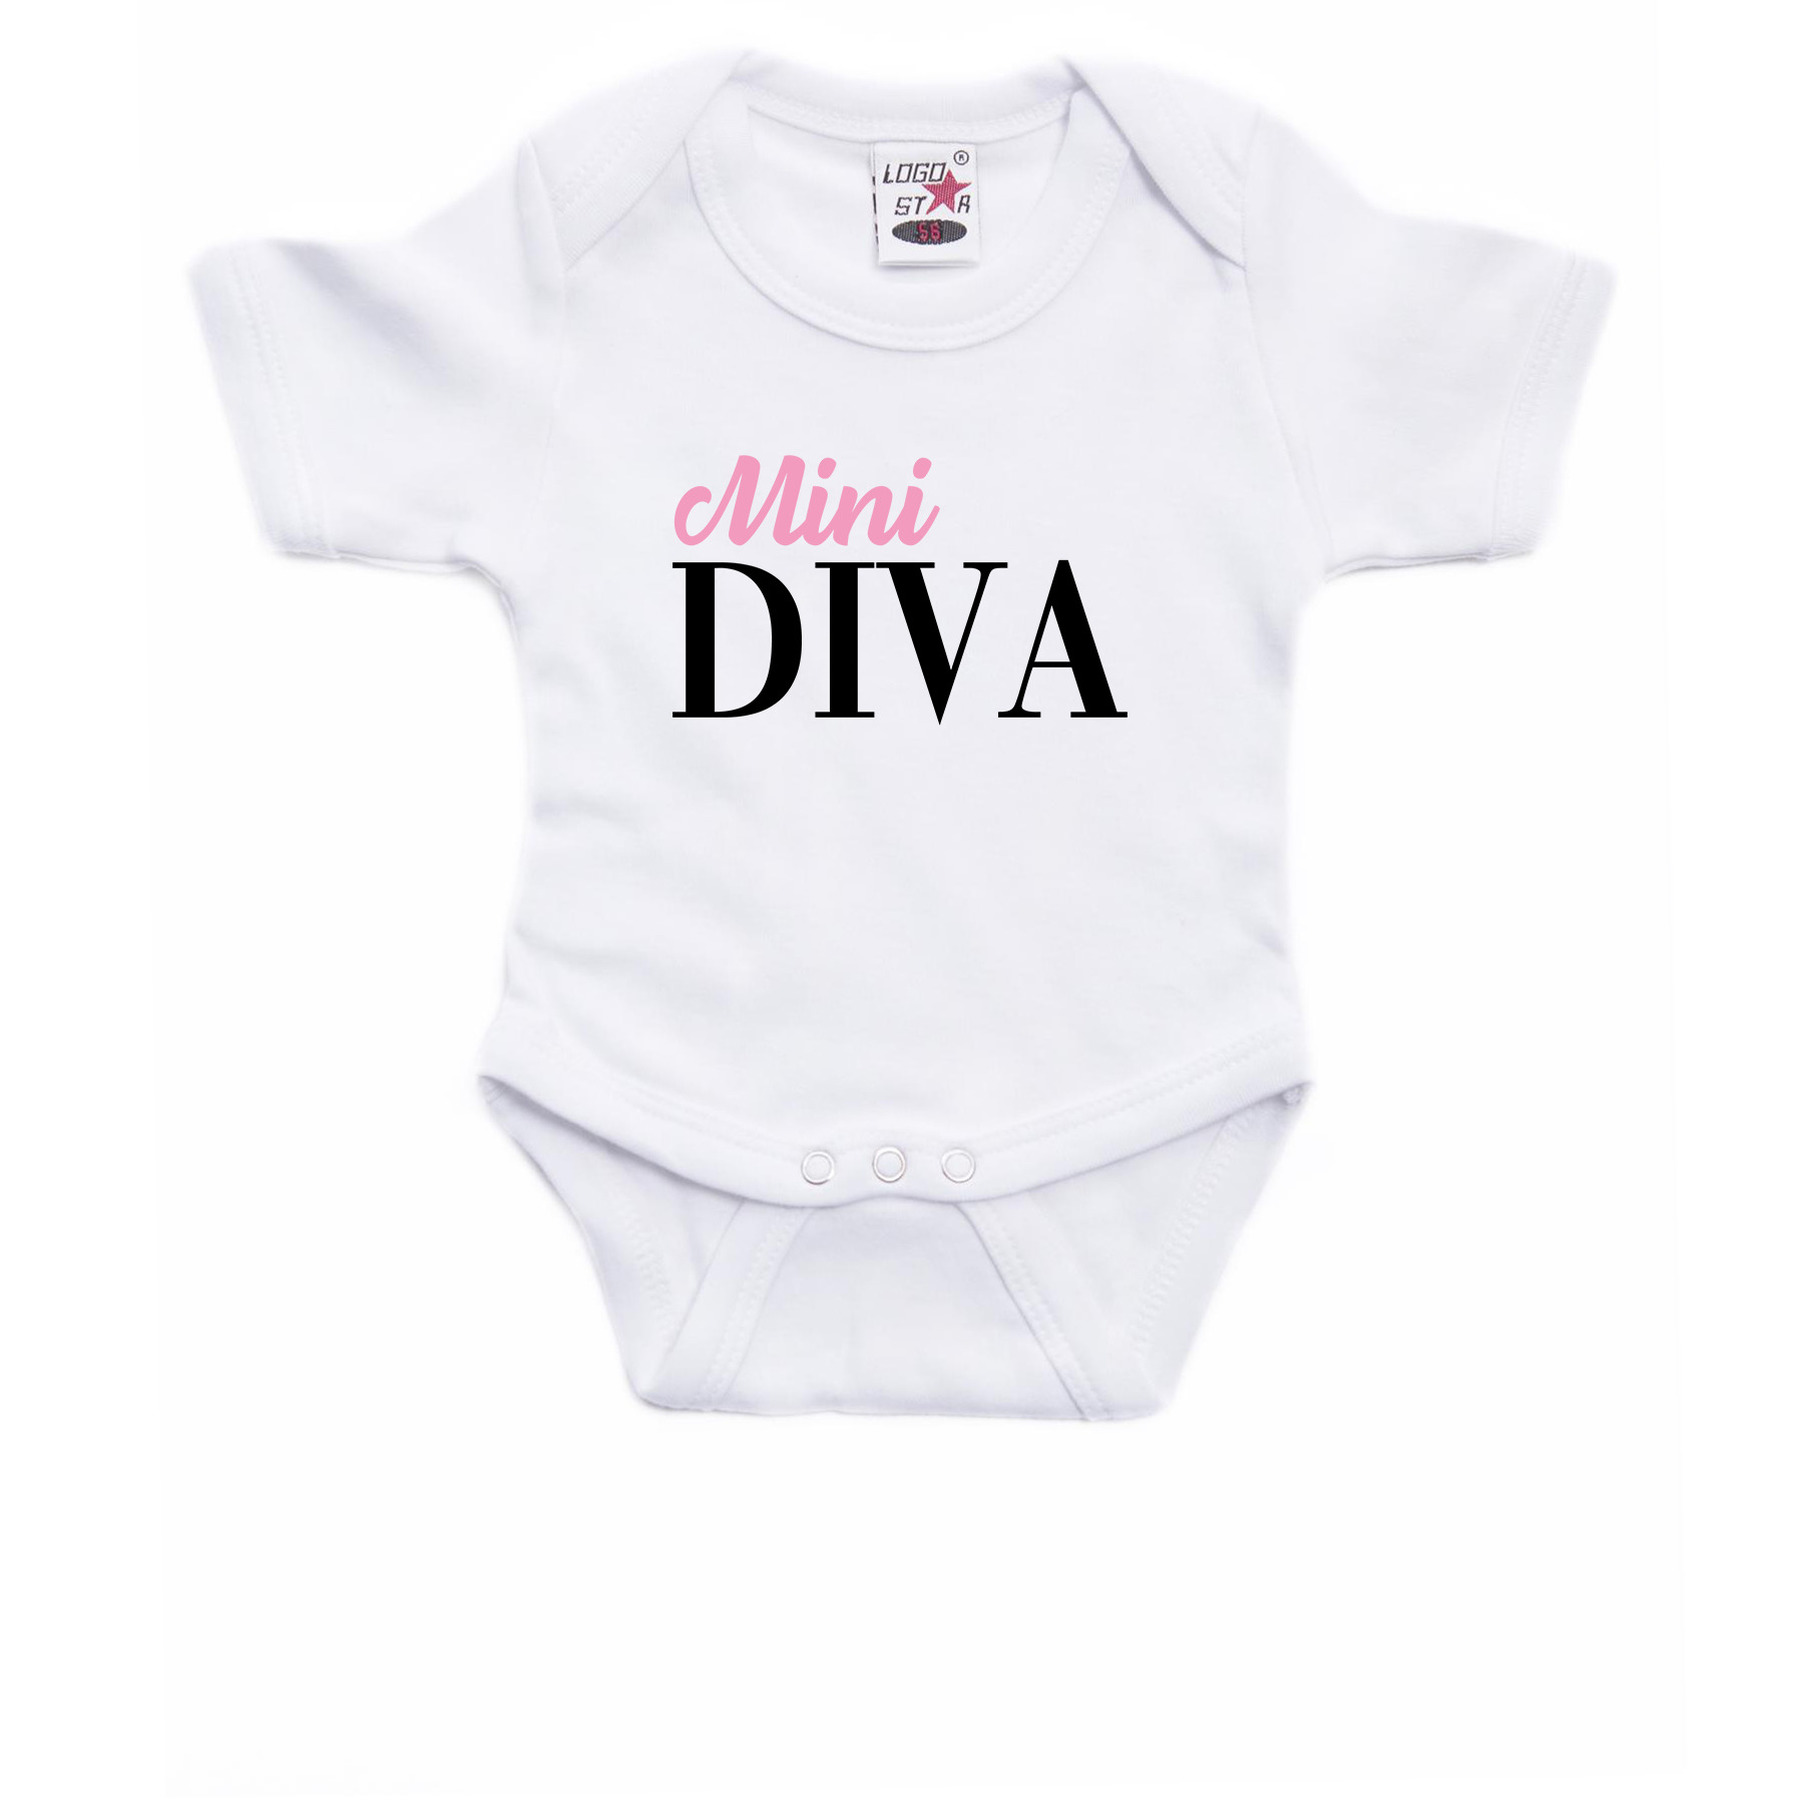 Mini Diva cadeau baby rompertje wit jongen/meisje